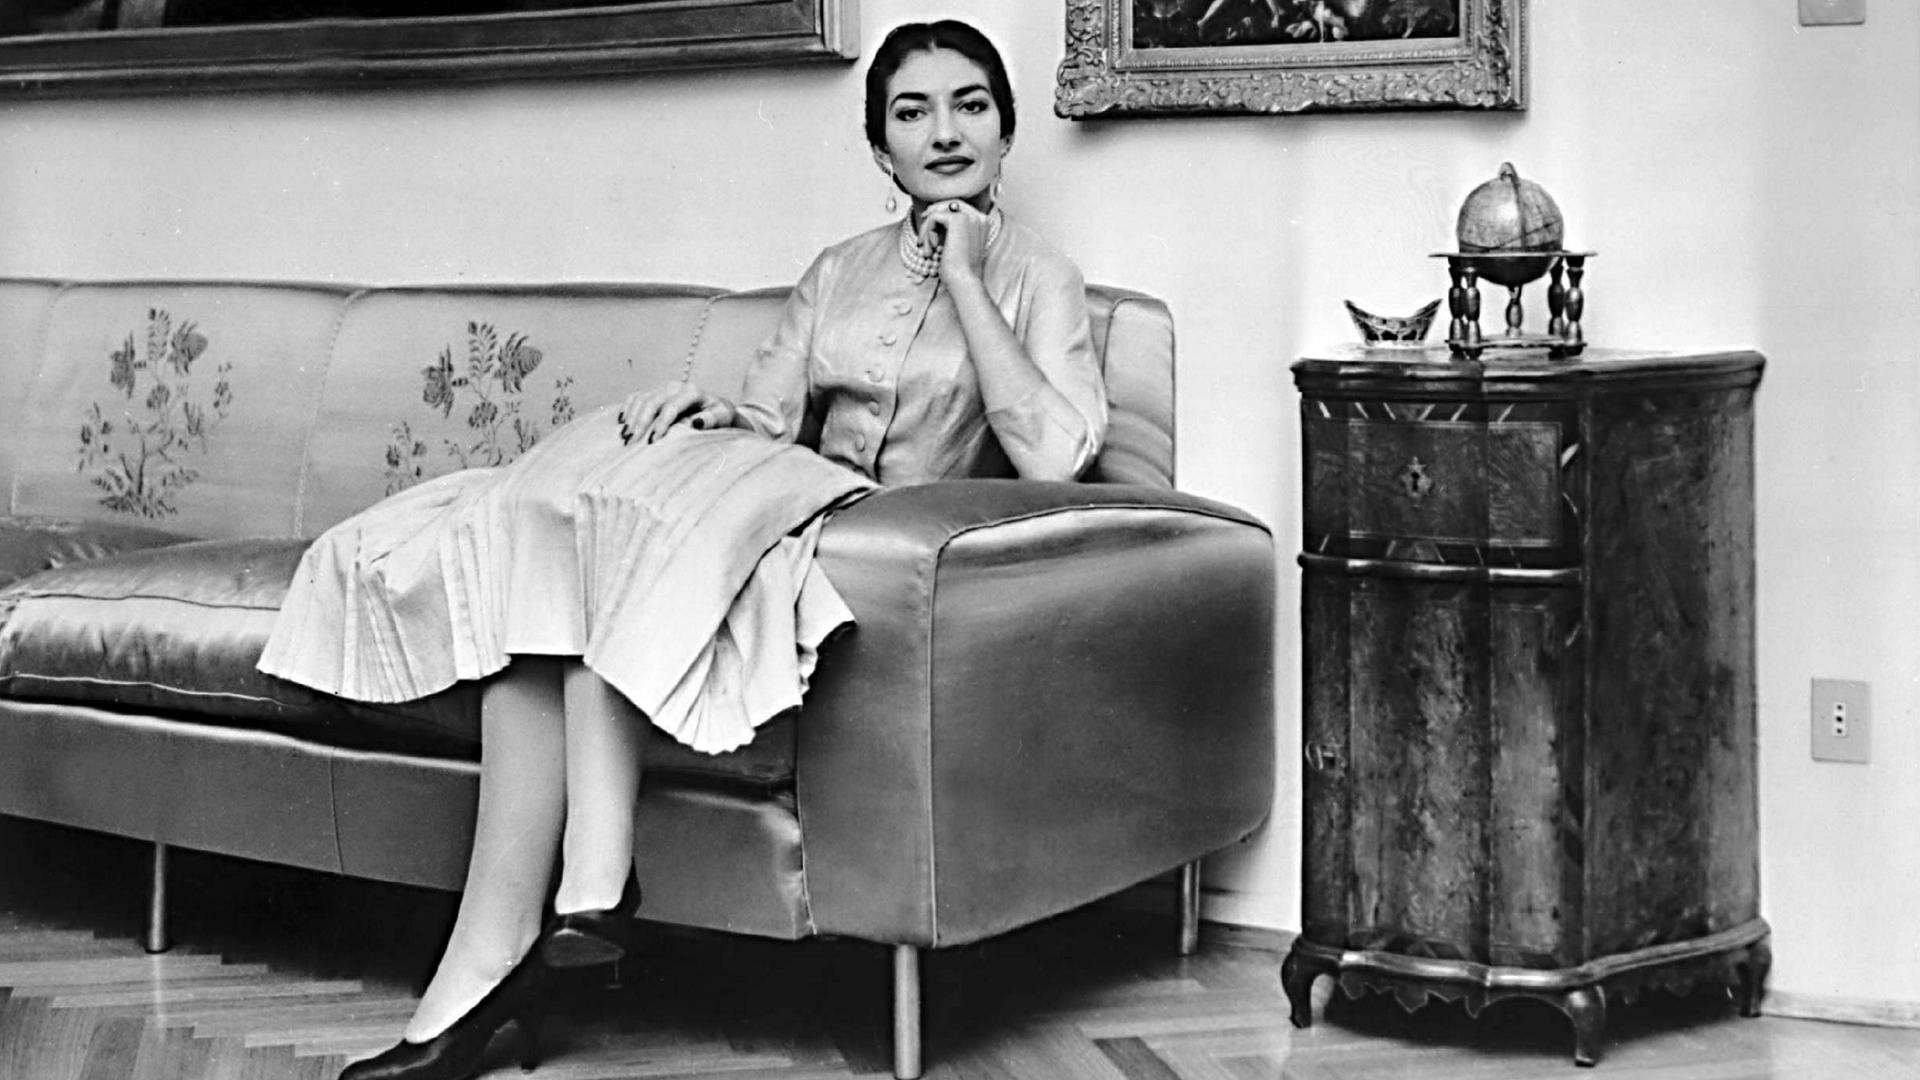 Maria Callas sitzt auf einem Sofa, über ihr hängen Gemälde. Sie trägt ein helles Kostüm und schaut in die Kamera.